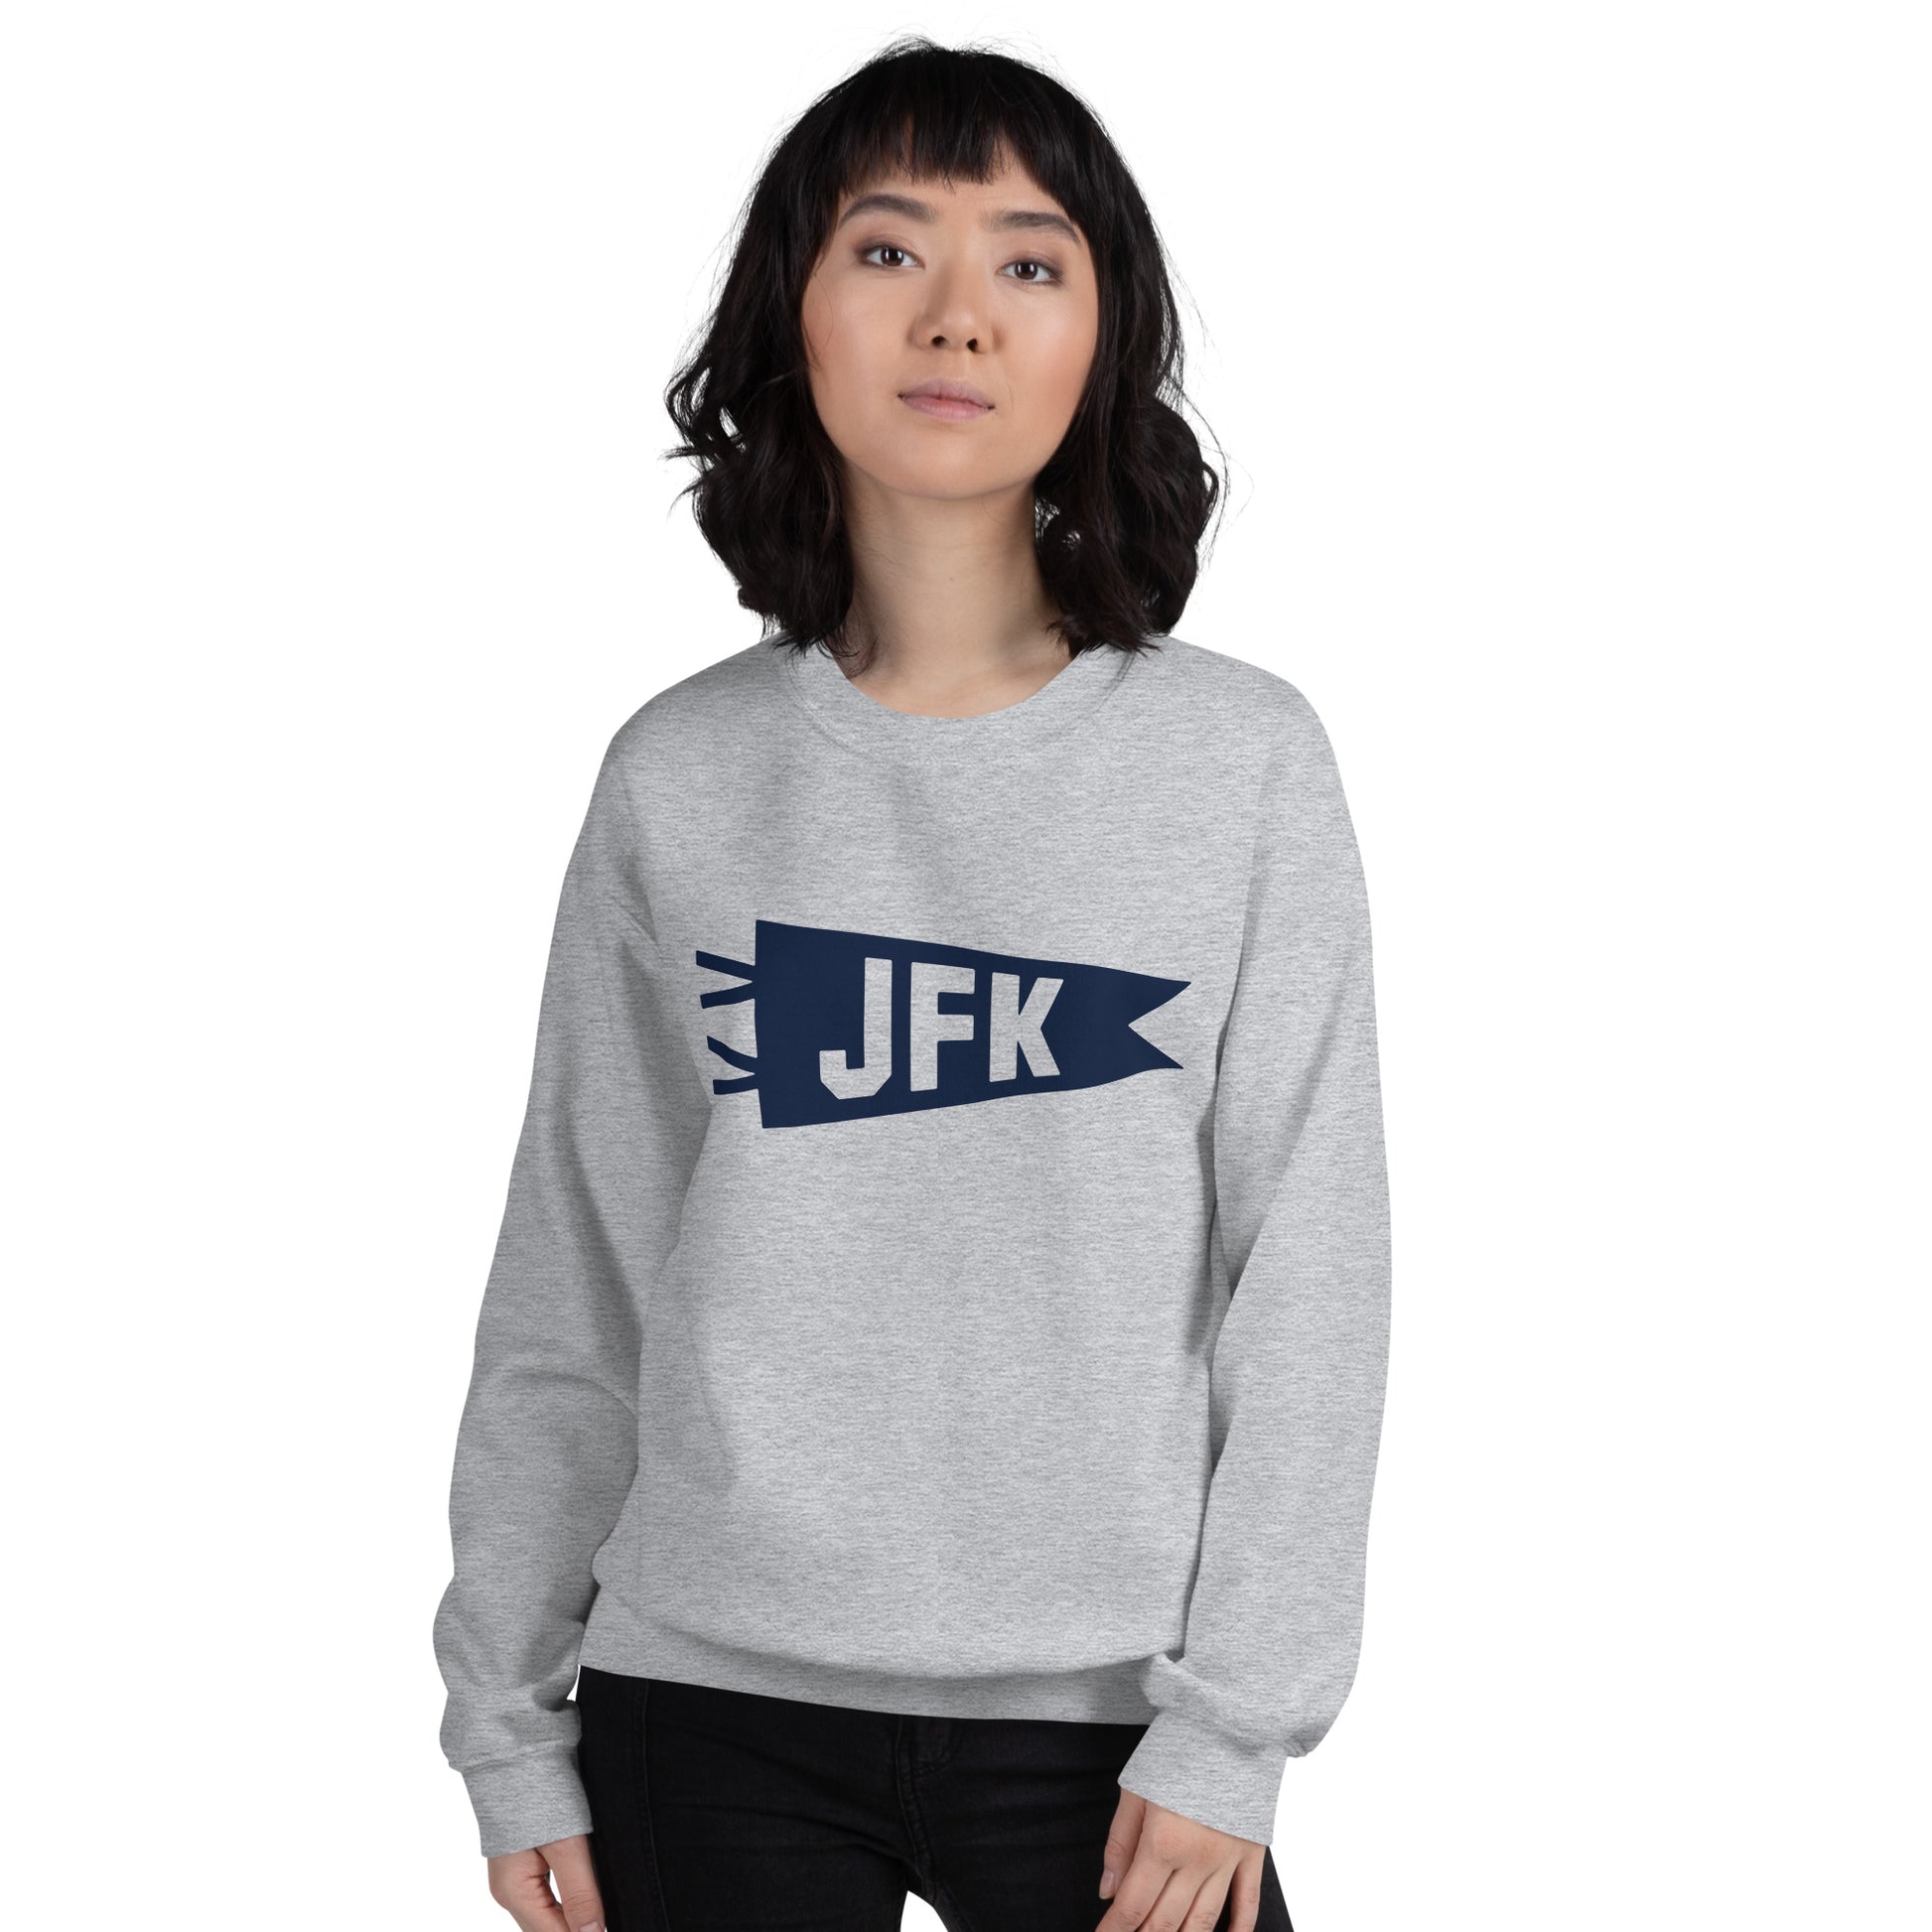 Airport Code Sweatshirt - Navy Blue Graphic • JFK New York City • YHM Designs - Image 10